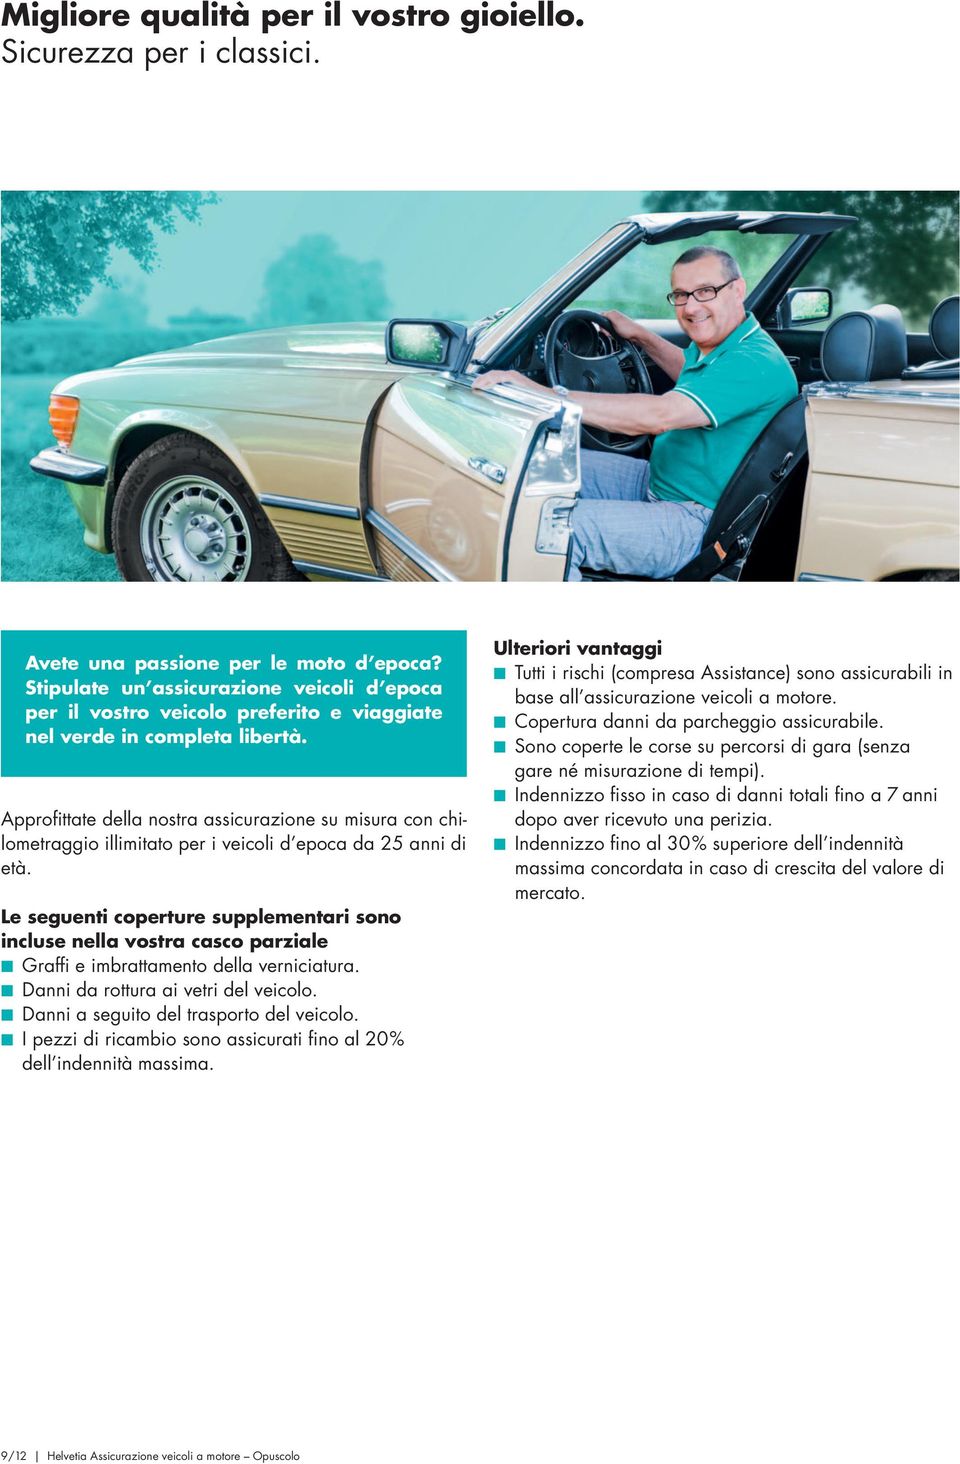 Approfittate della nostra assicurazione su misura con chilometraggio illimitato per i veicoli d epoca da 25 anni di età.